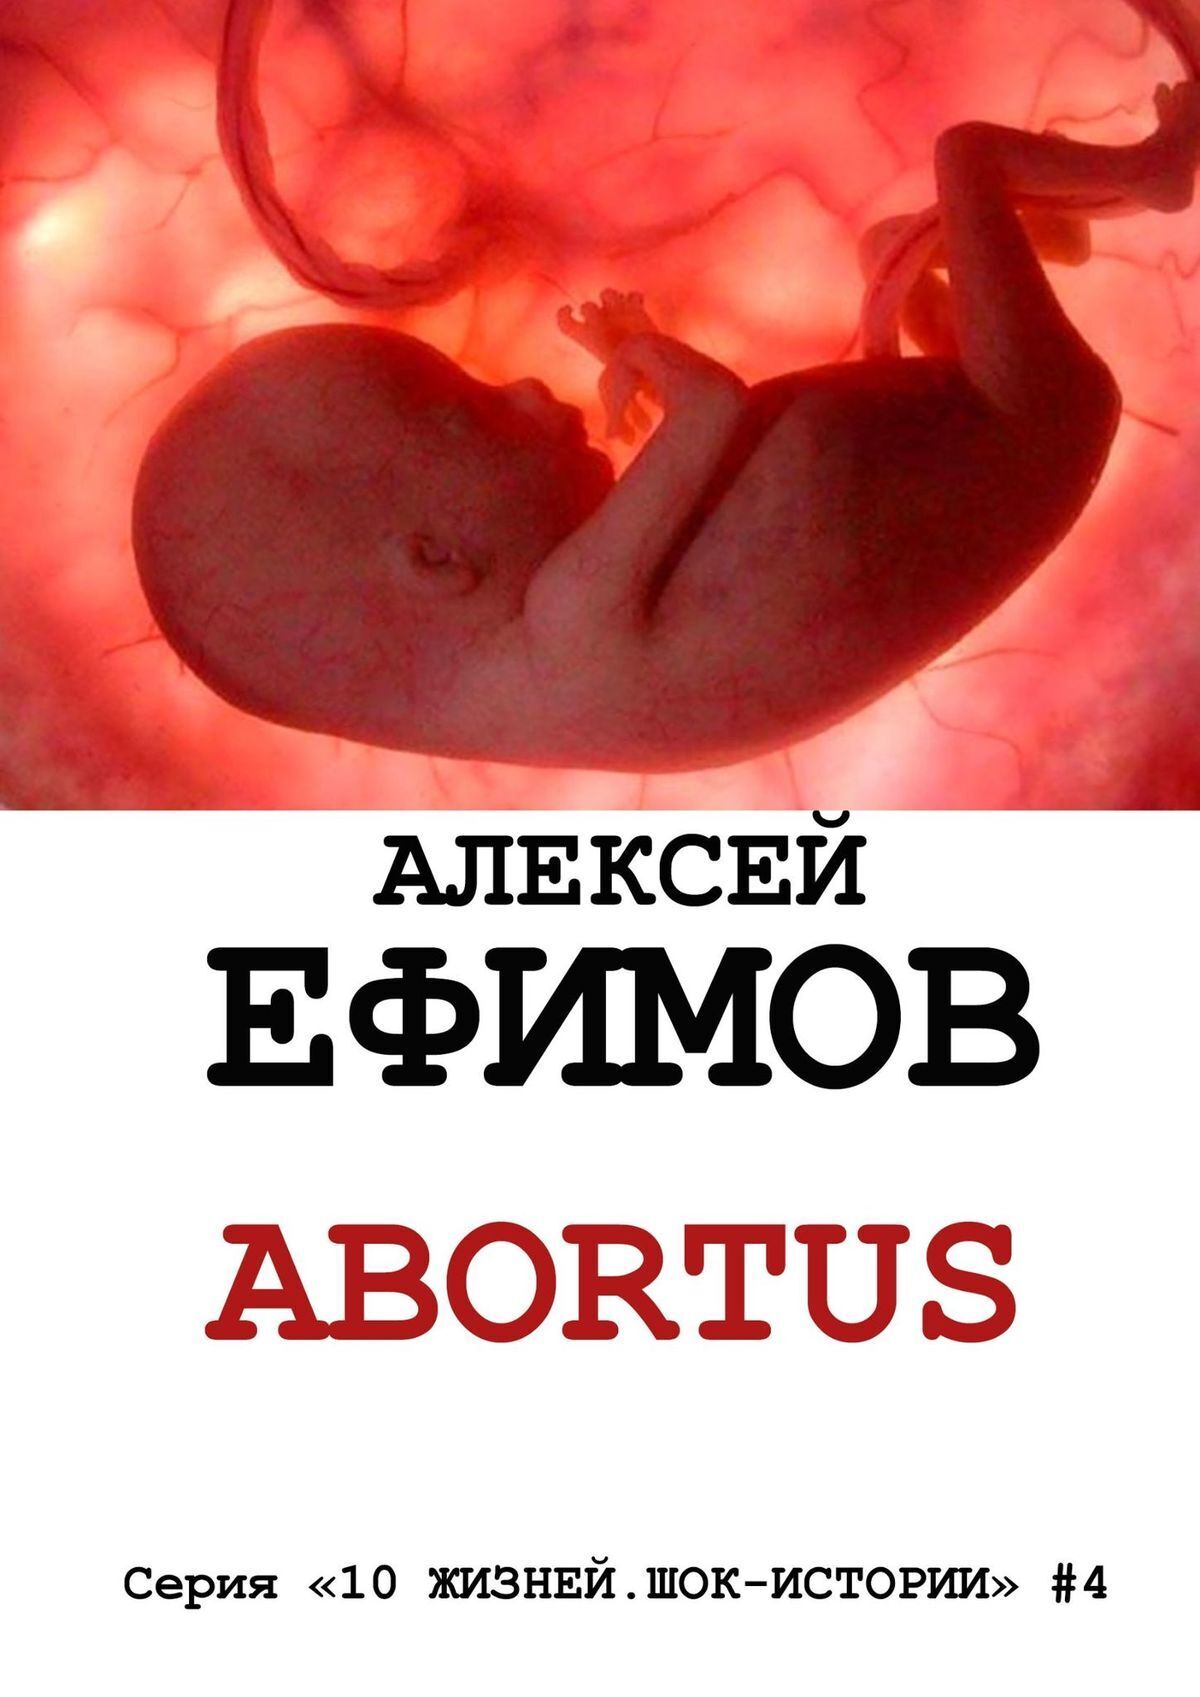 Алексей Ефимов Abortus